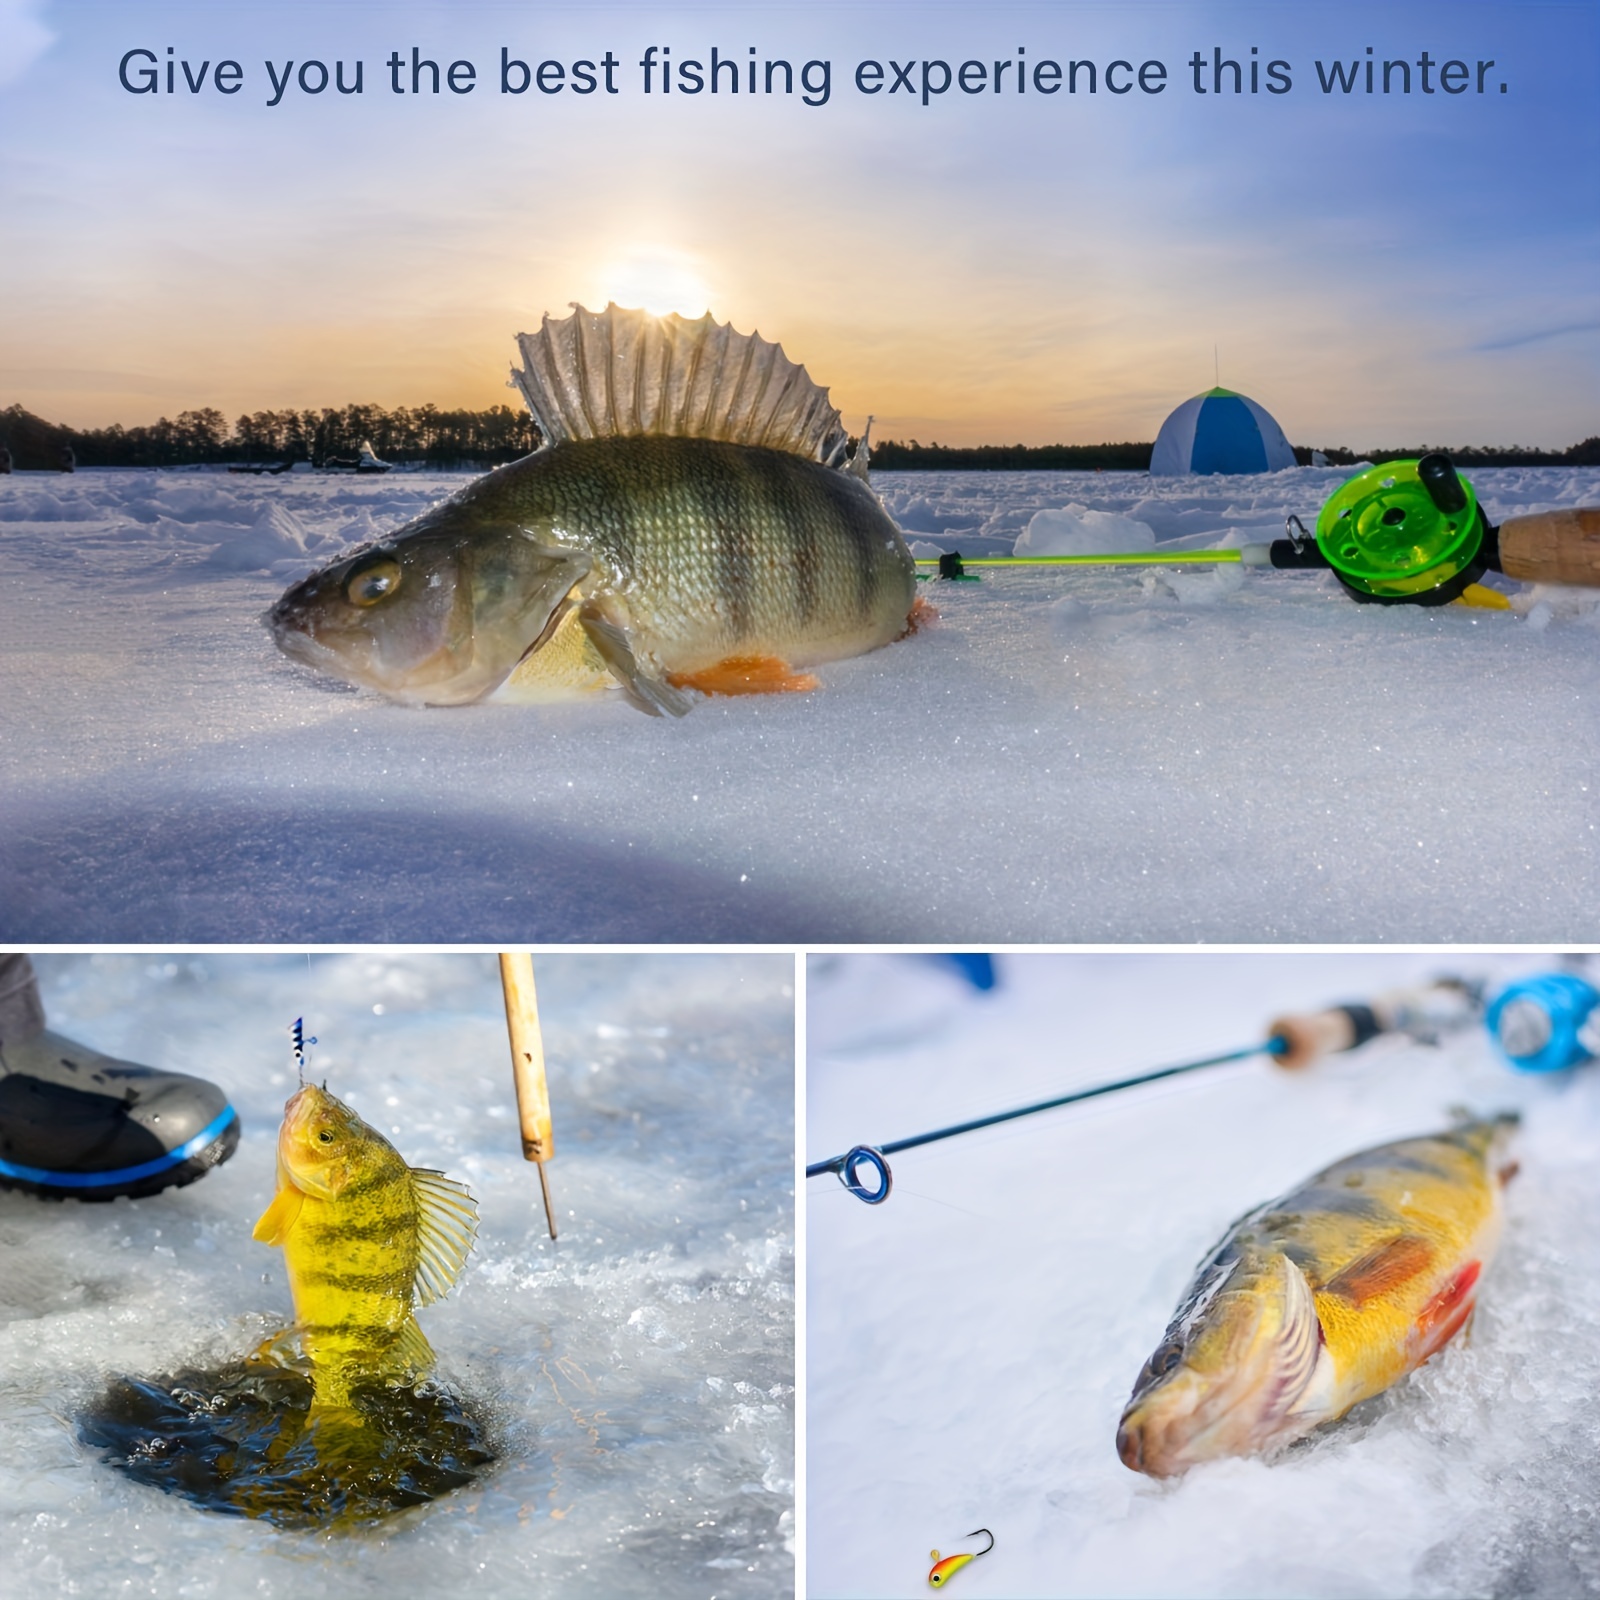 Ice Fishing Jigbait Kit Glow Artificial Hard Fishing - Temu